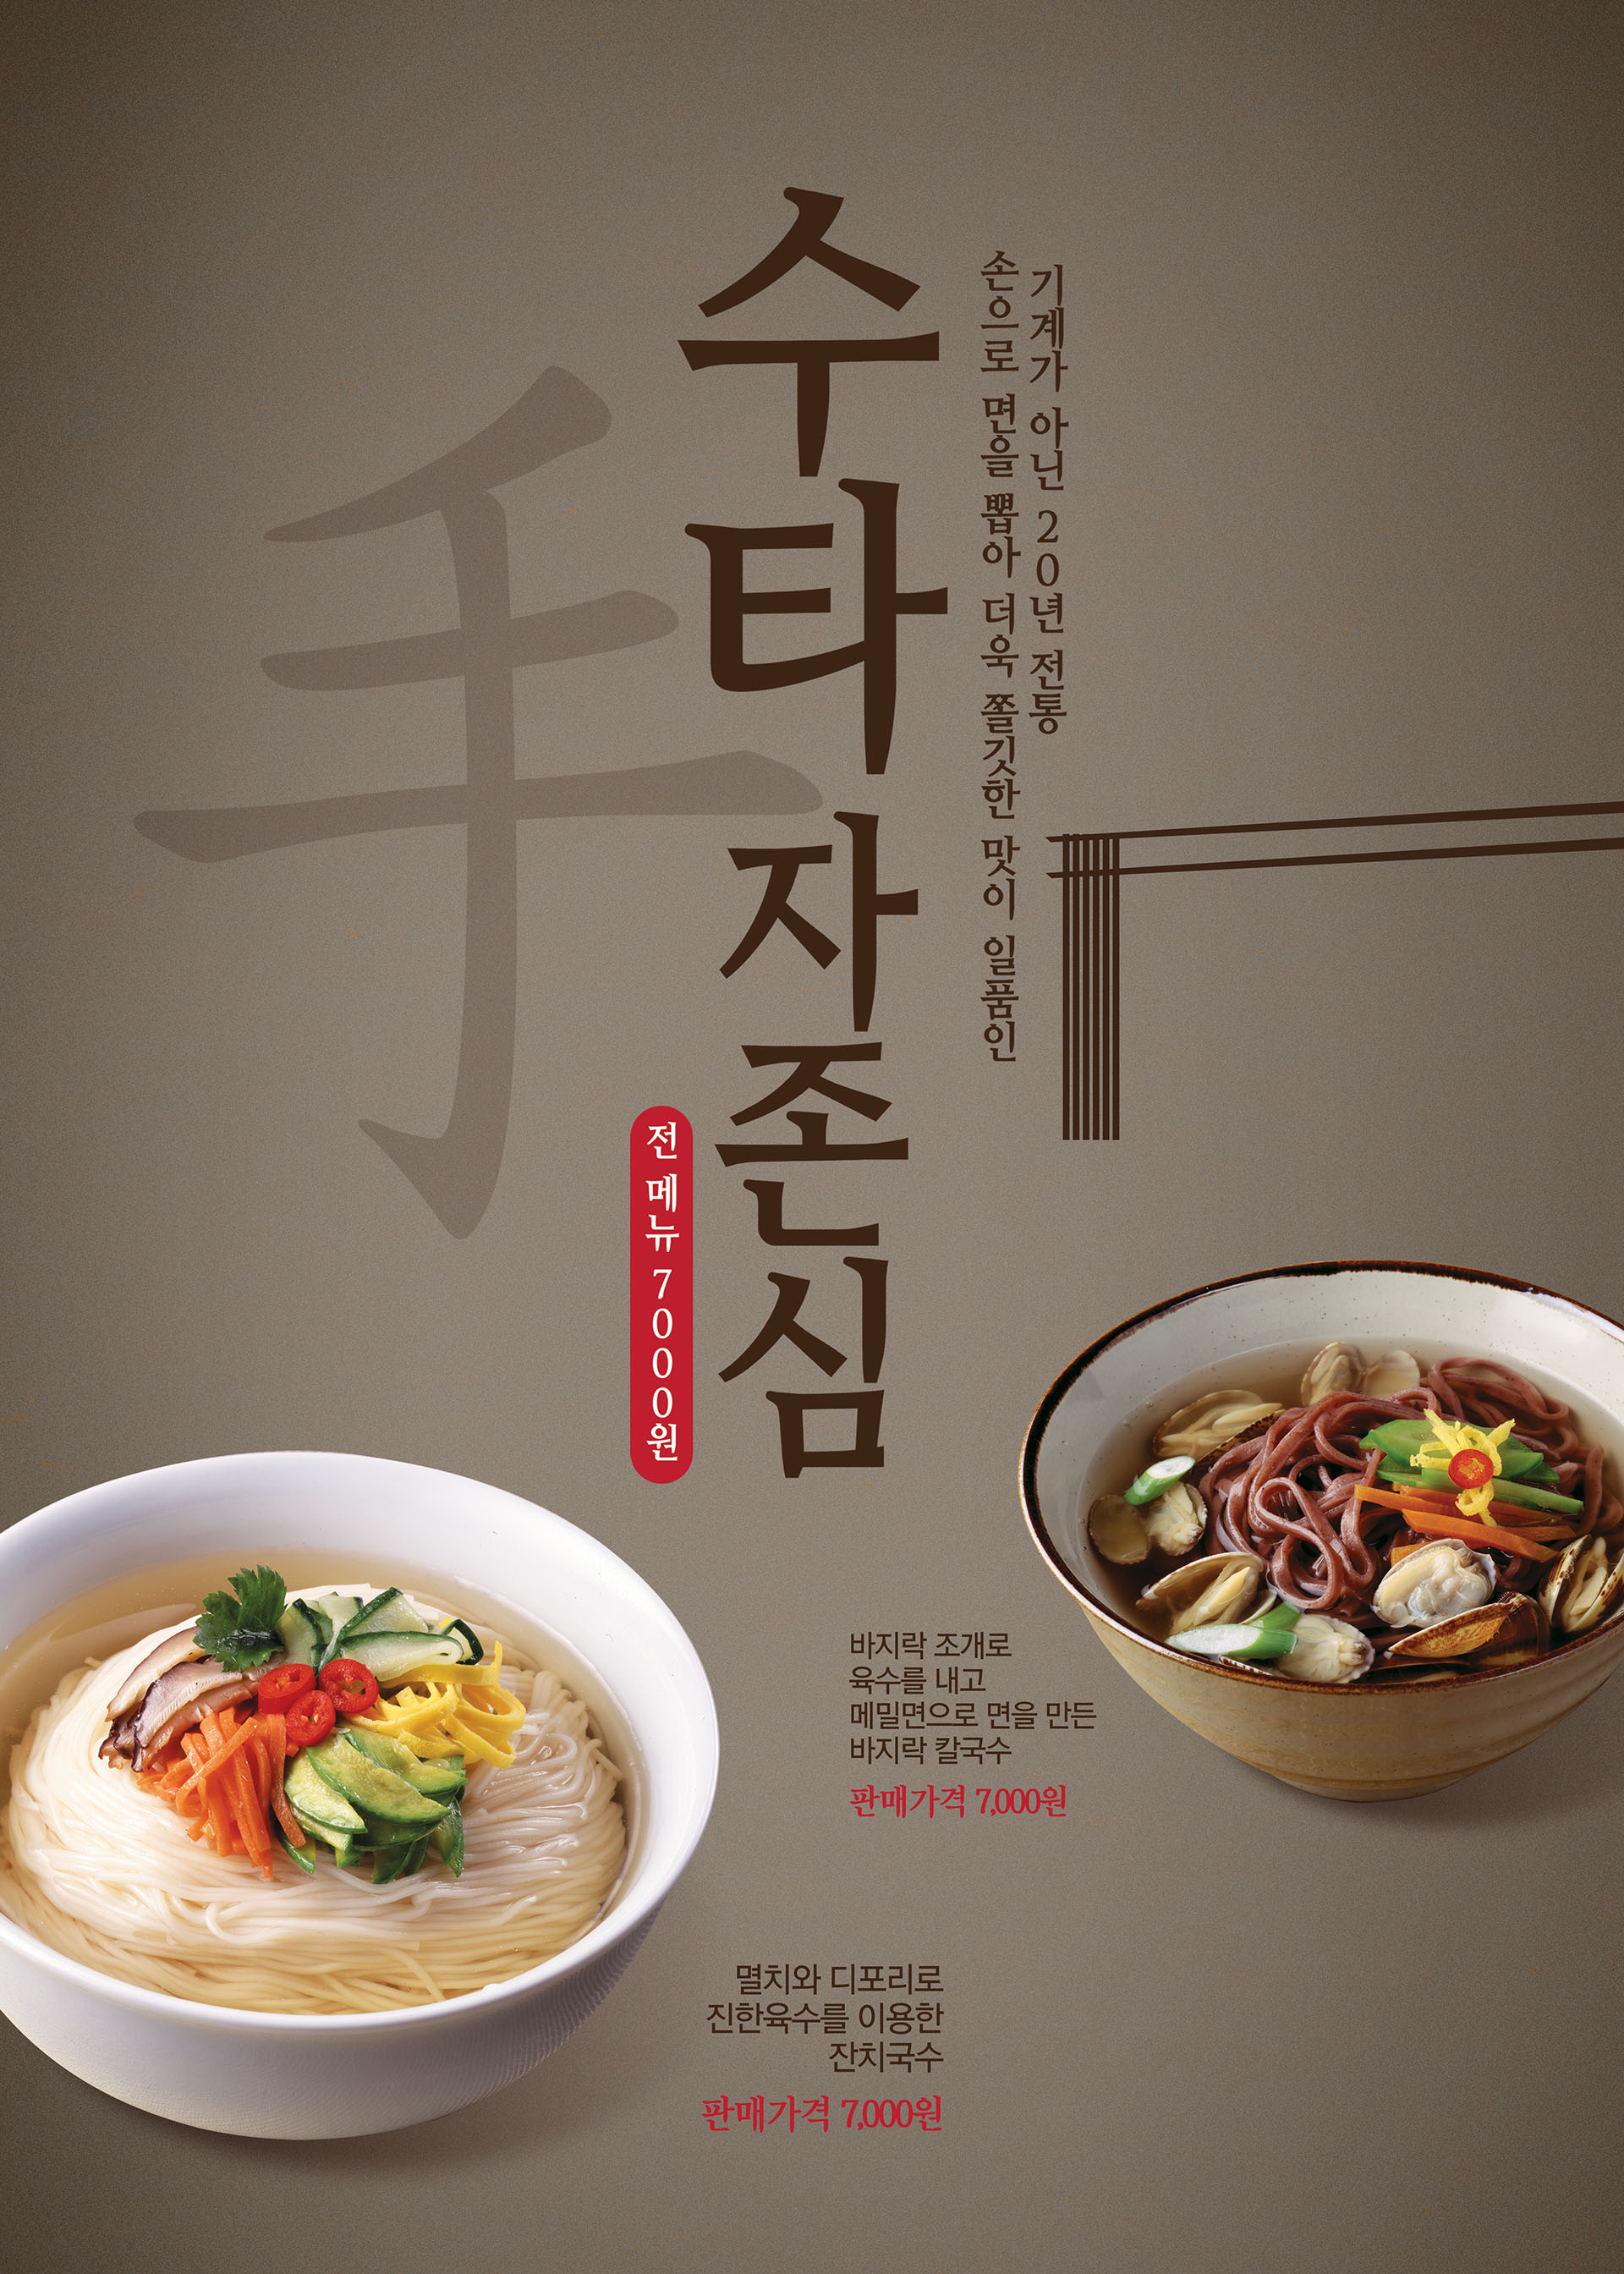 10款韩国诱人美食广告海报psd模板下载[psd] – 设计小咖